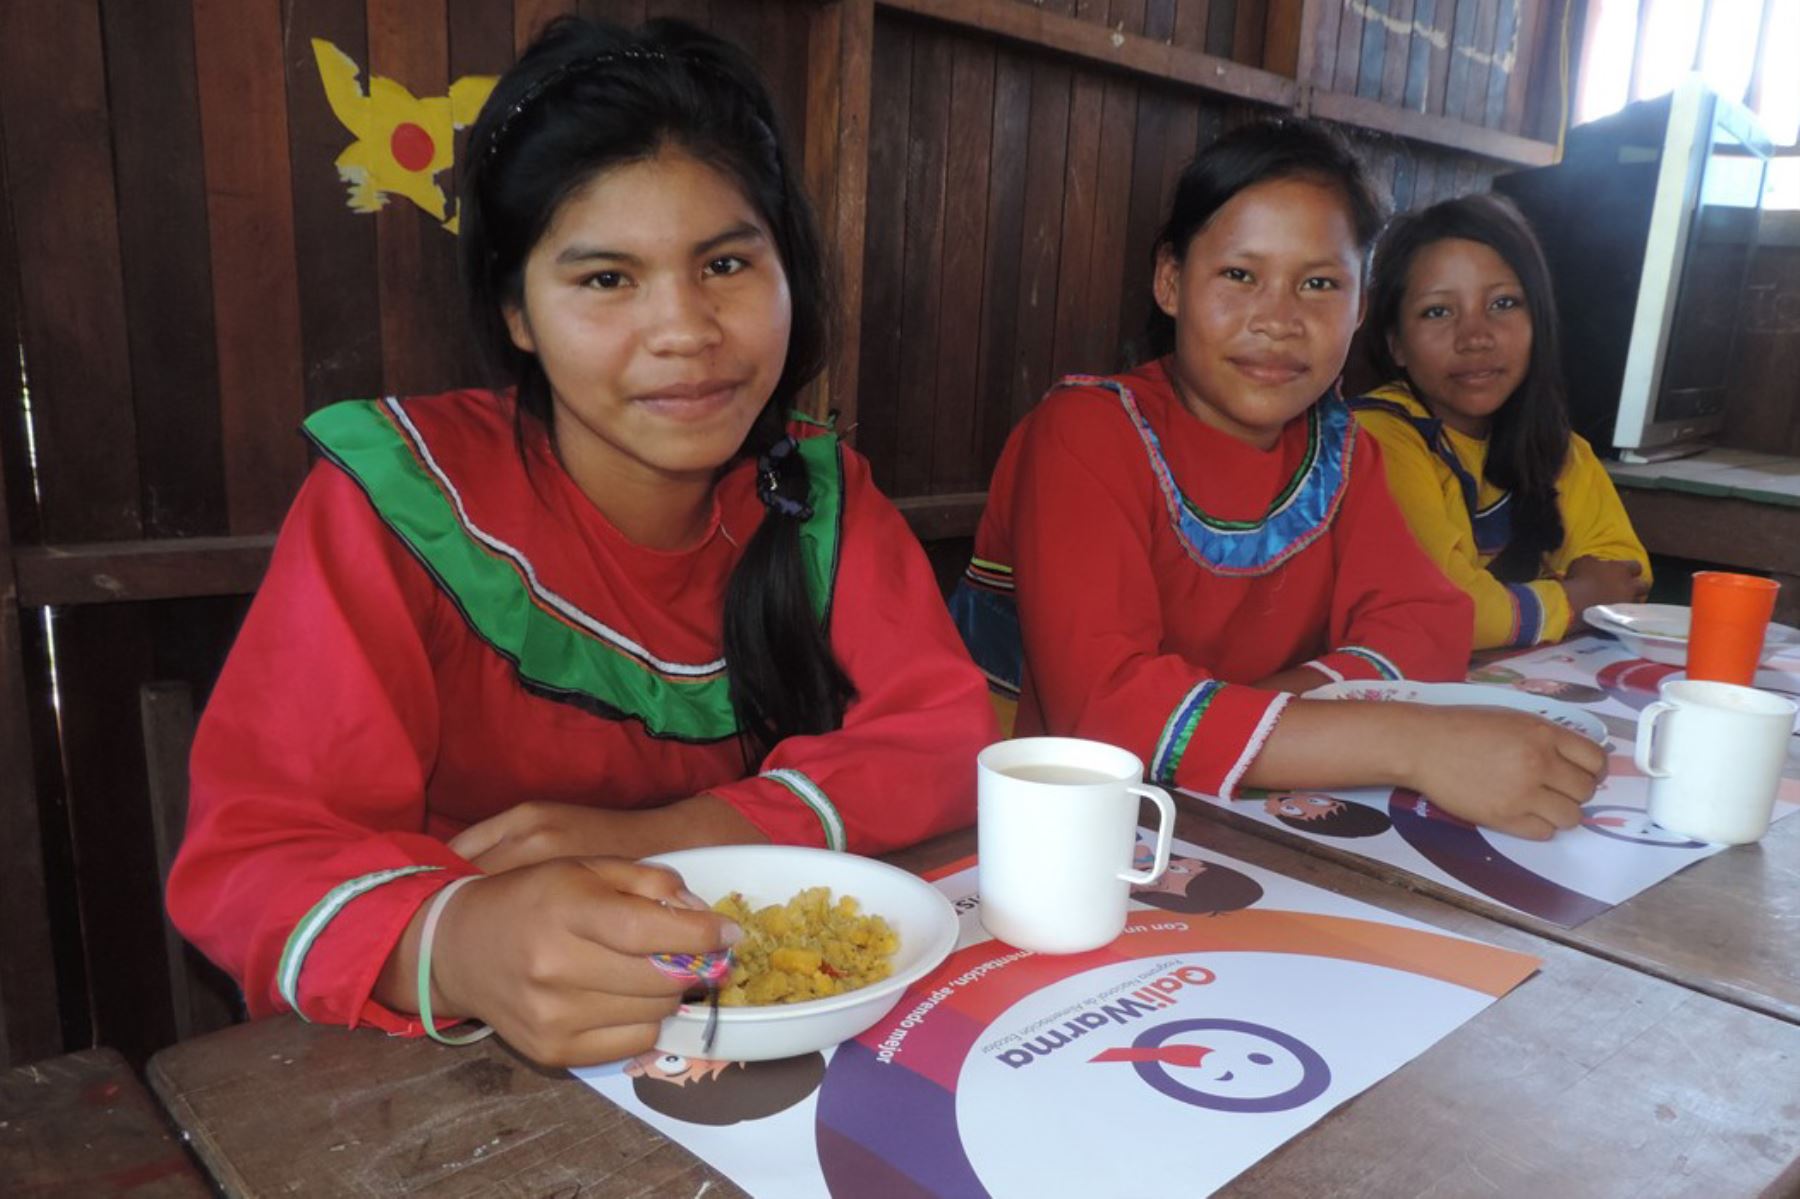 Qali Warma garantiza servicio alimentario a más de 119 mil alumnos de jornada escolar completa en diversas regiones del país, entre ellas las ubicadas en la Amazonía.